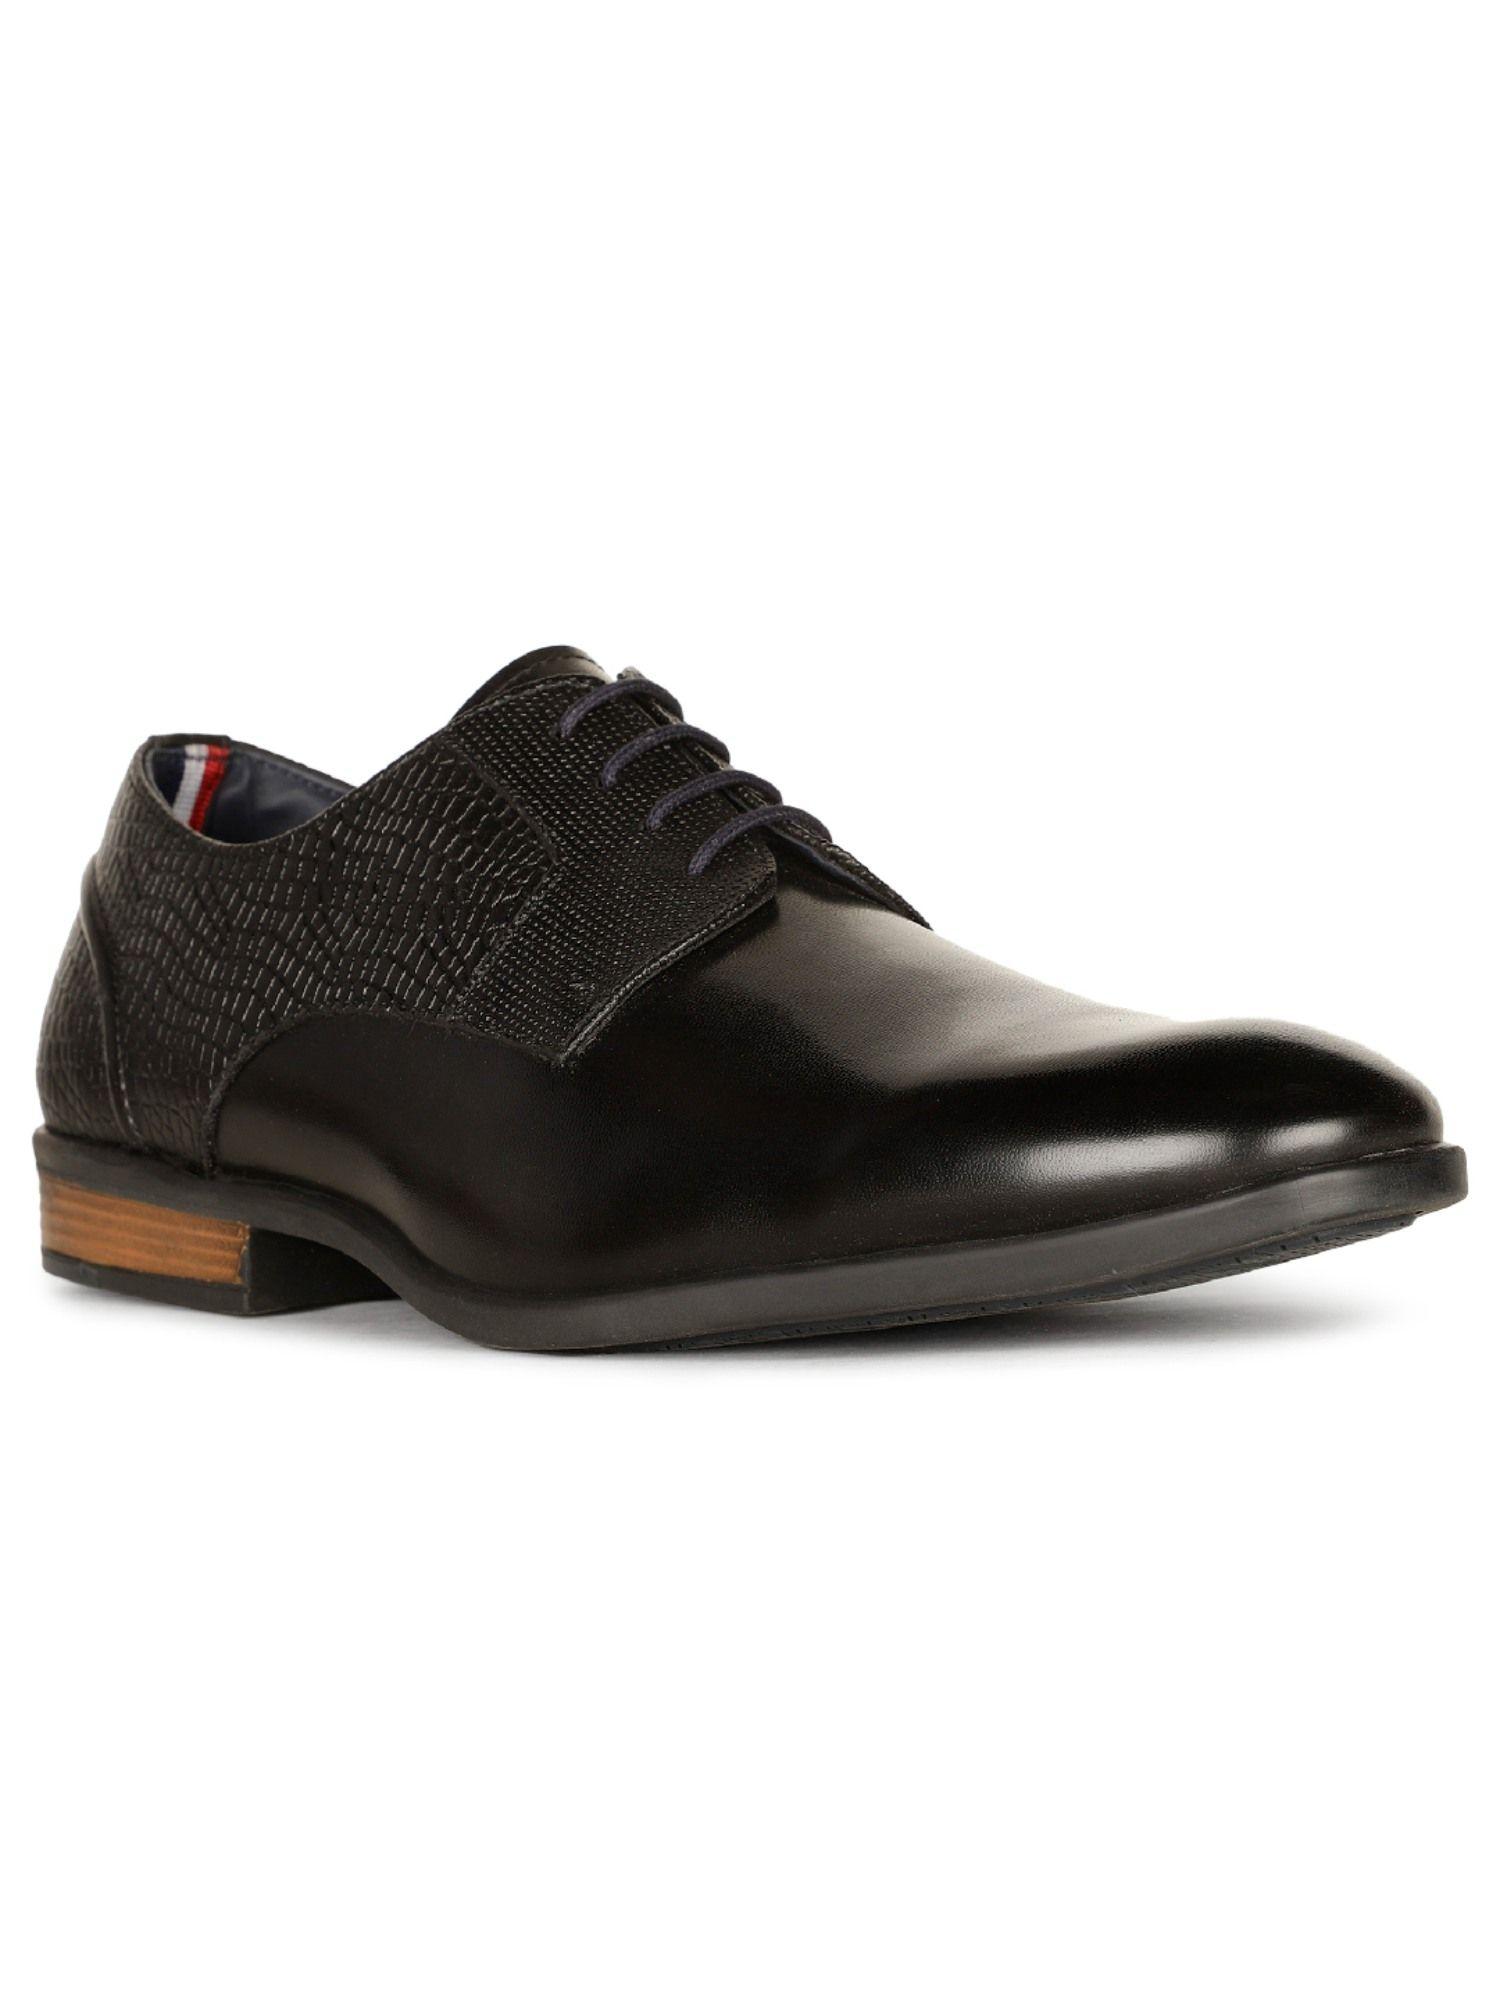 men black lace-ups formal shoes